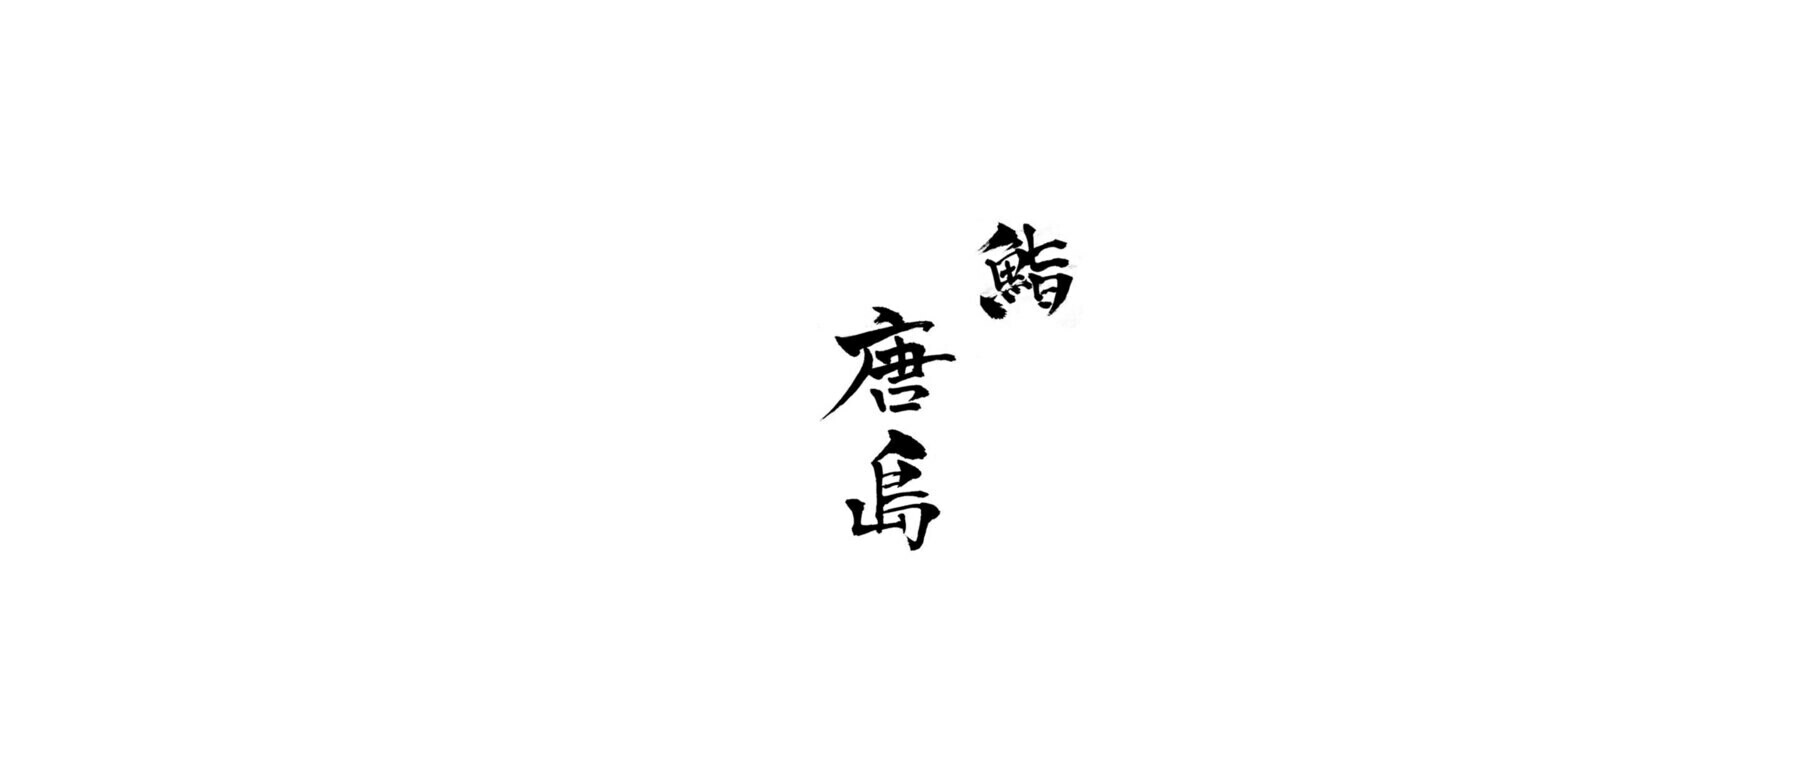 Sushi Karashima's image 1